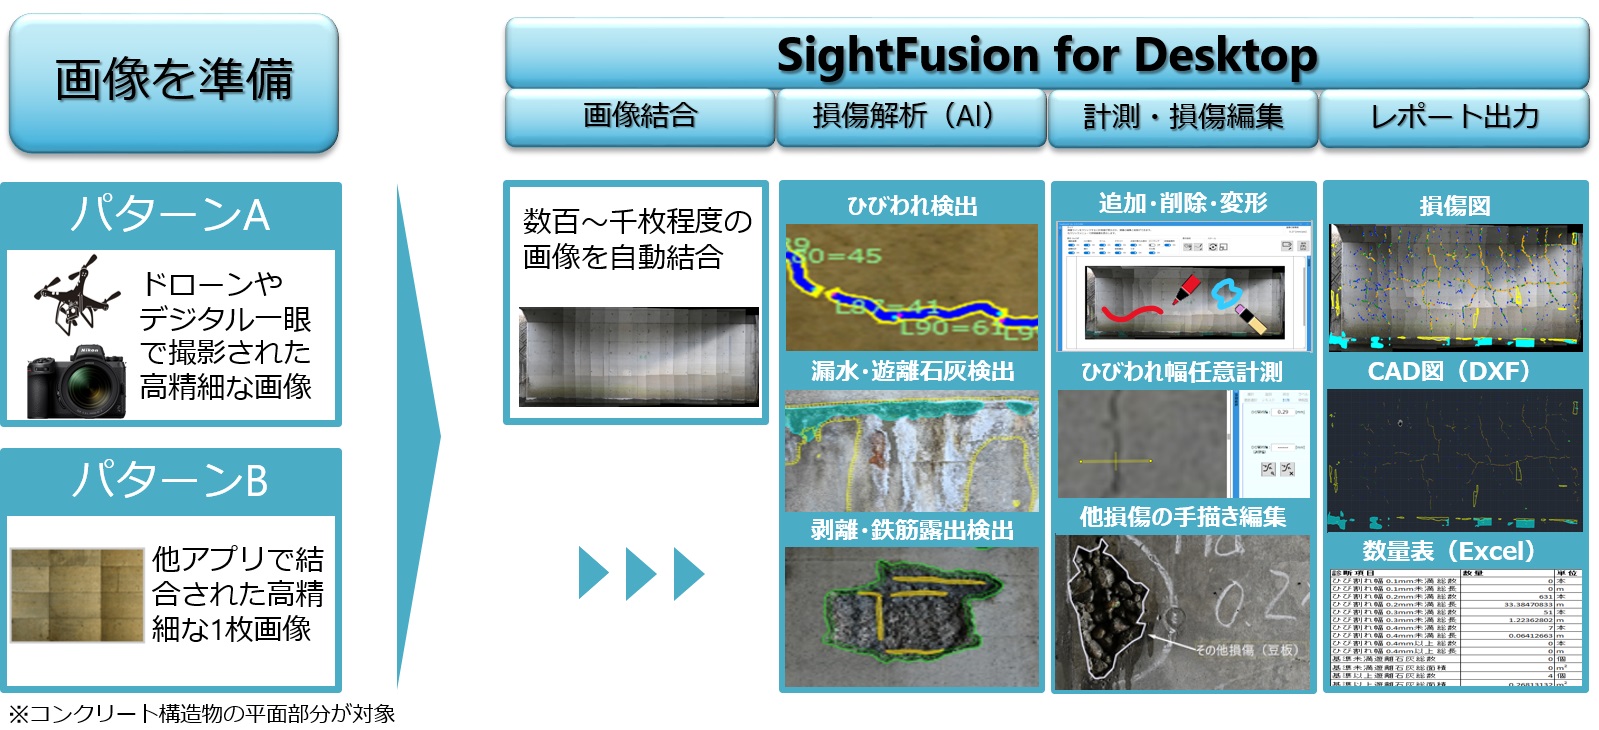 SightFusion for Desktopのワークフロー